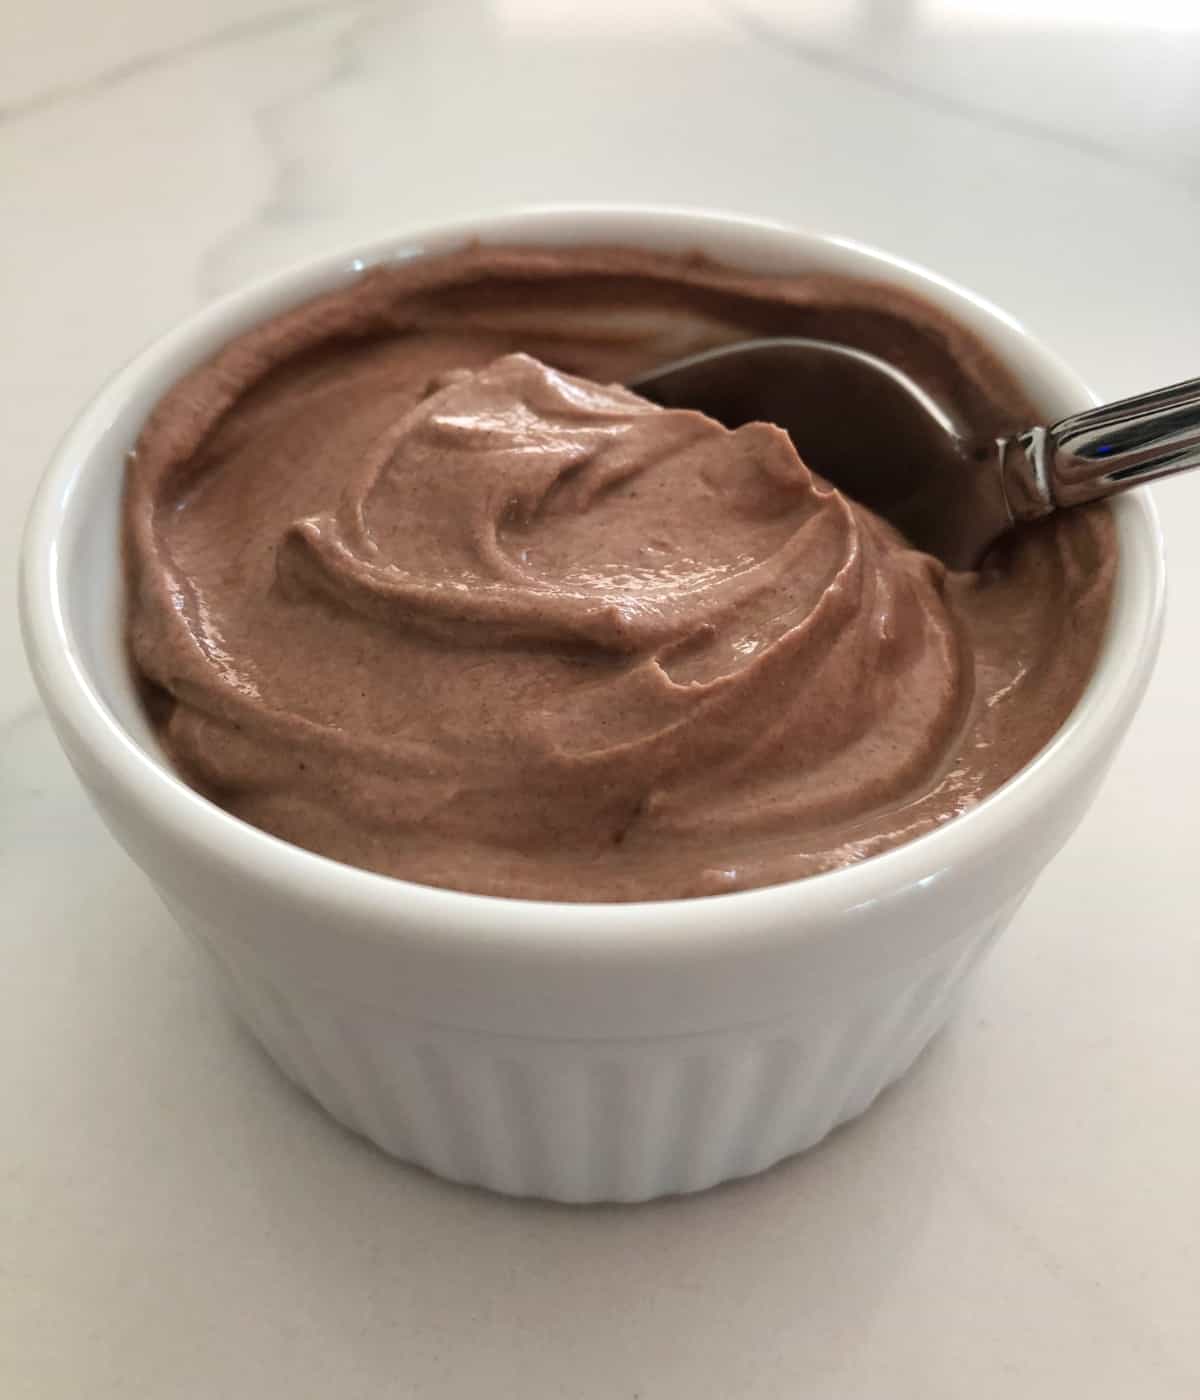 Creamy chocolate yogurt in white ramekin with spoon.